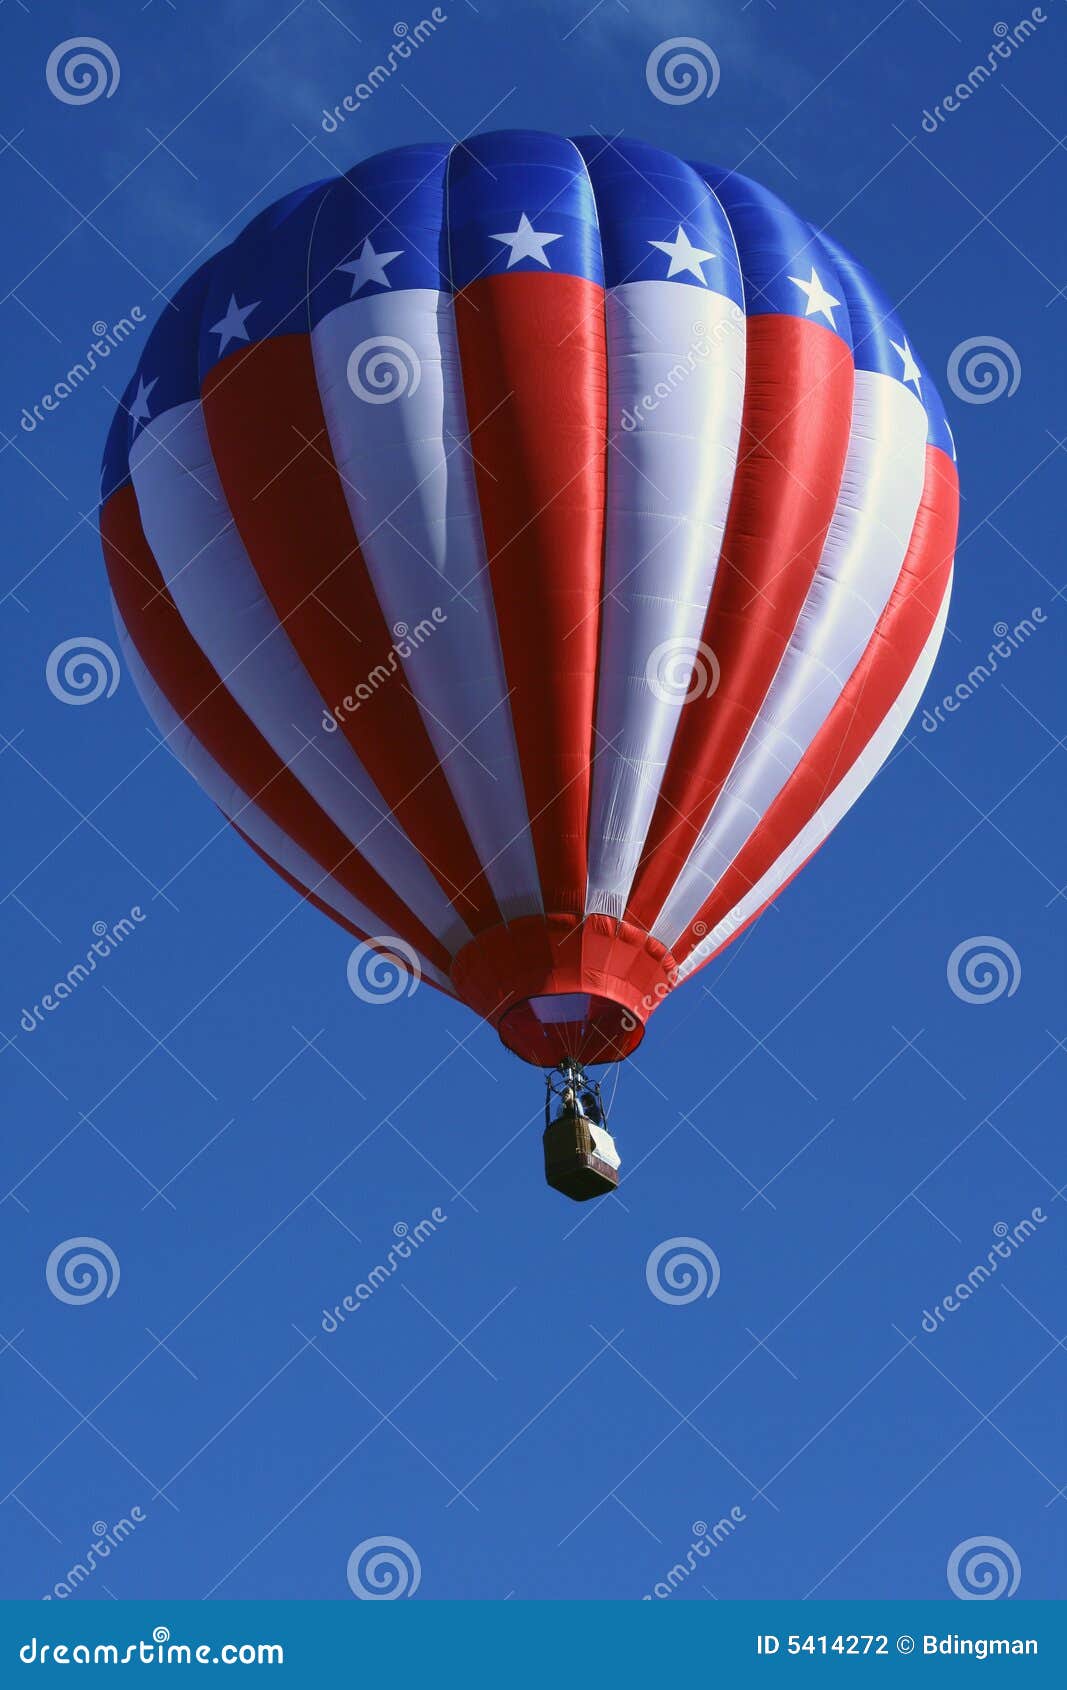 Globo patriótico del aire caliente. Un globo rojo, blanco y azul del aire caliente flota en un cielo azul profundo.